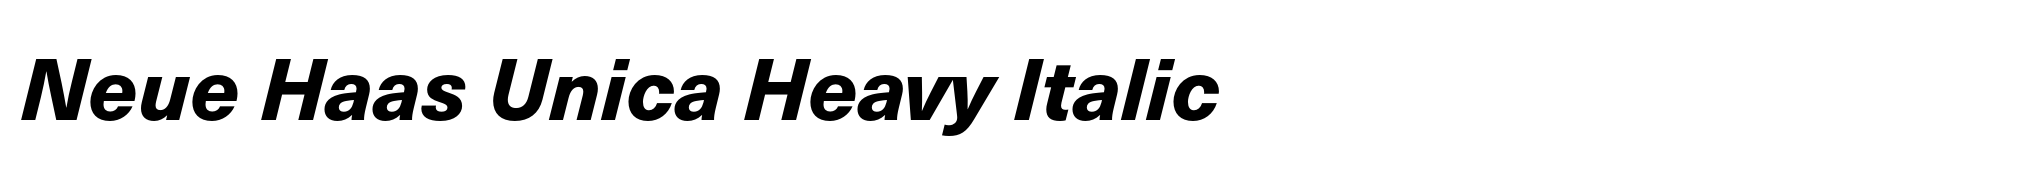 Neue Haas Unica Heavy Italic image